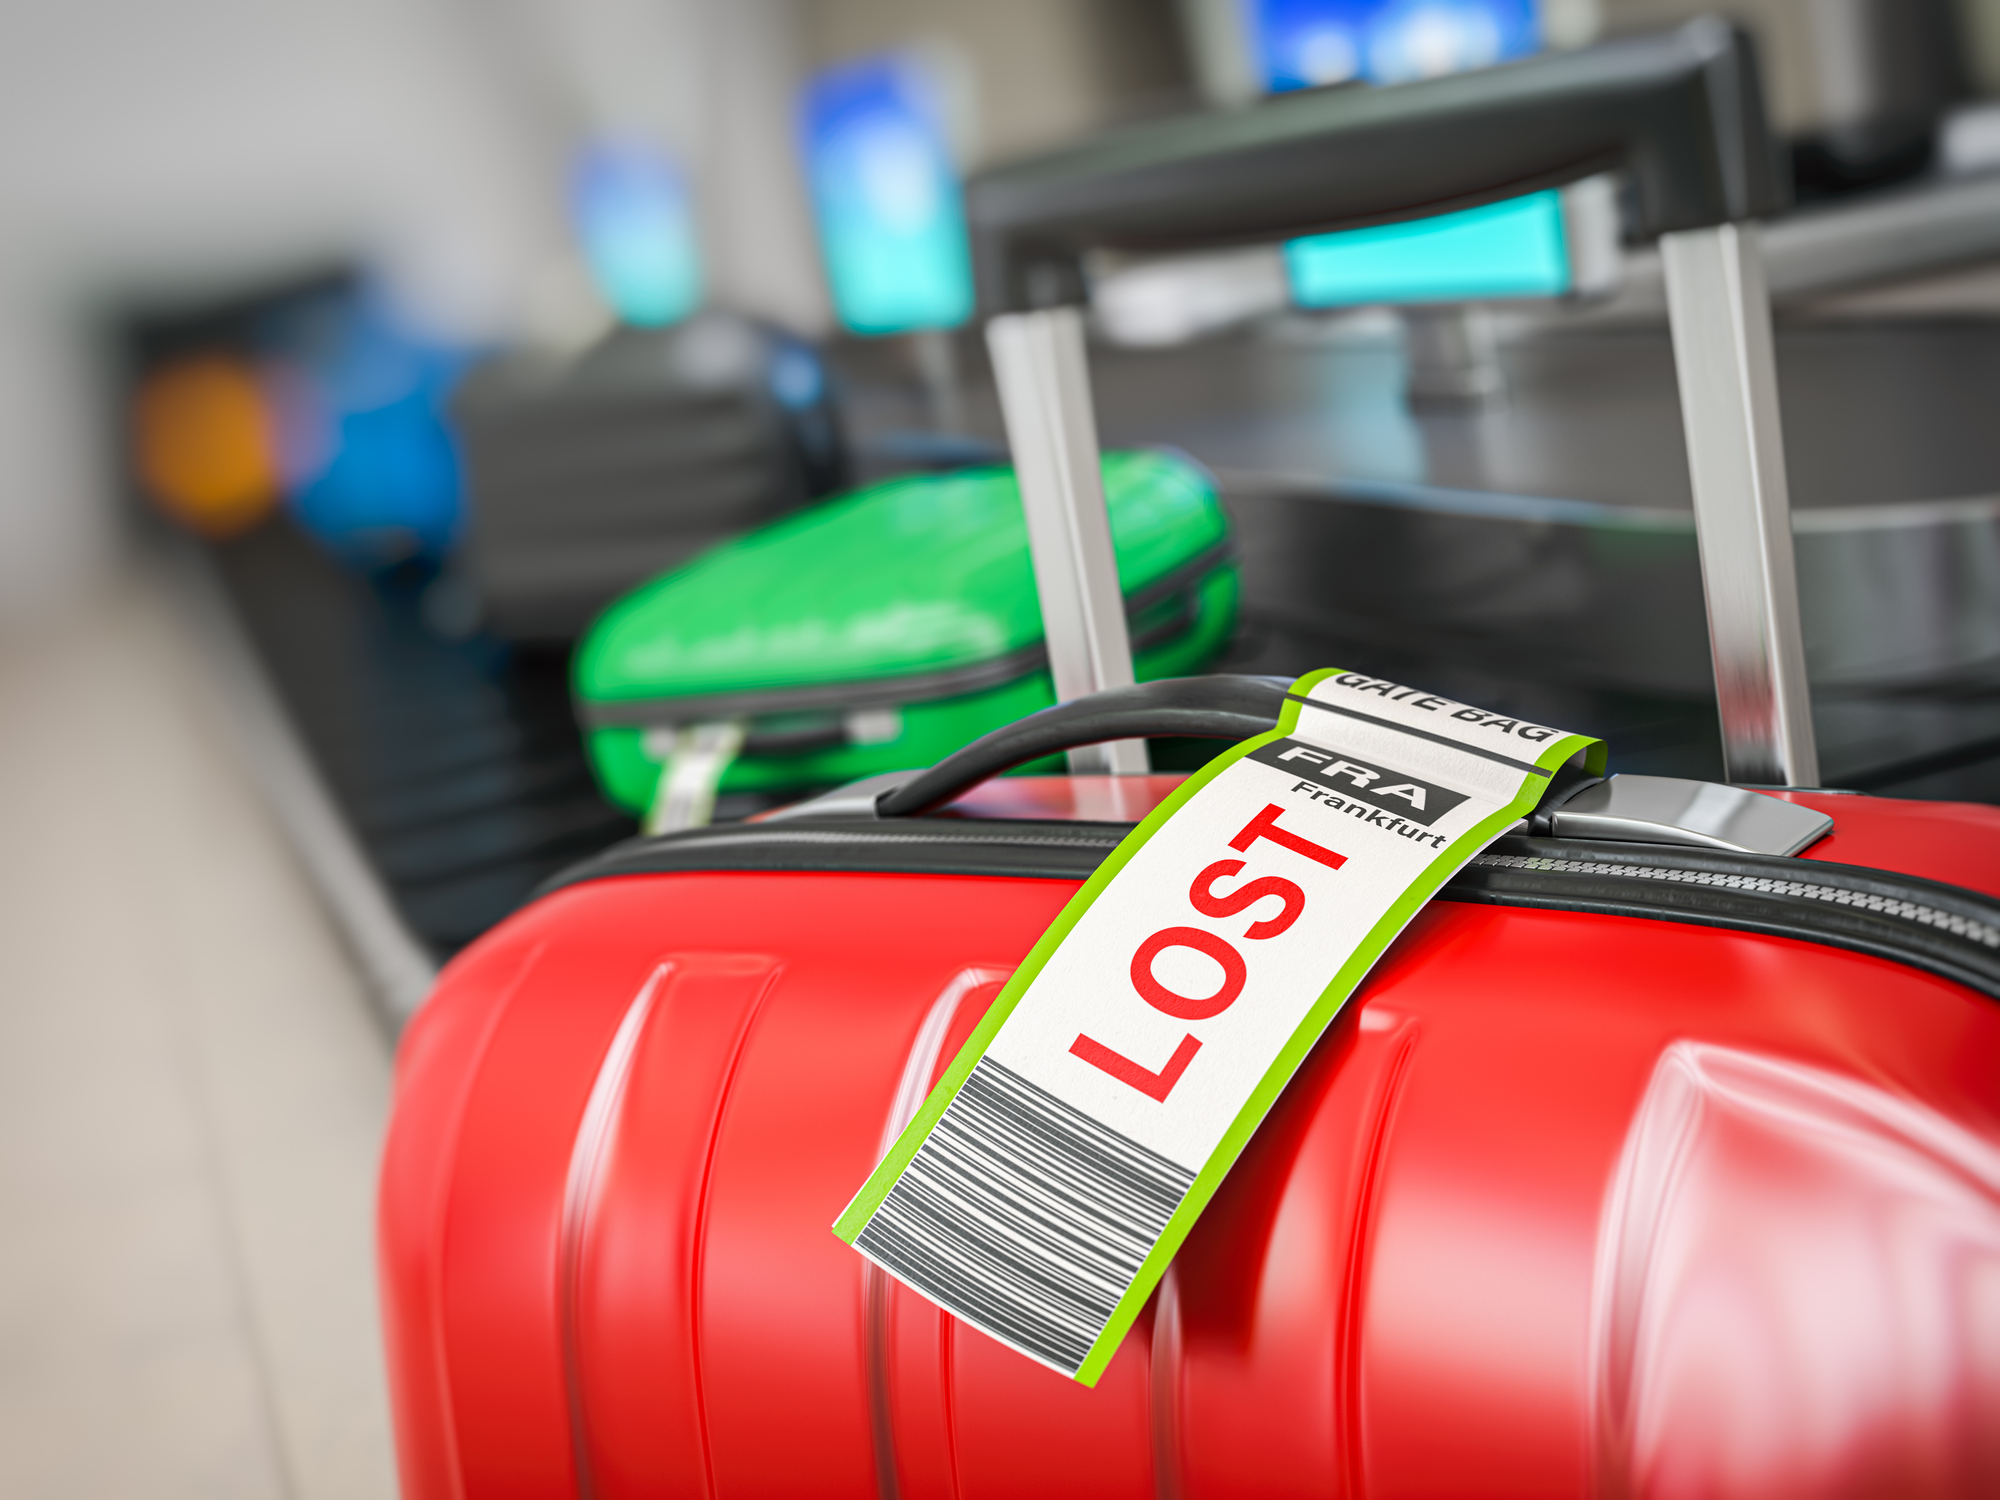 Op de voorgrond staat een koffer met een bagagelabel waarop staat "LOST", op de achtergrond rijden nog meer koffers op een bagageband.